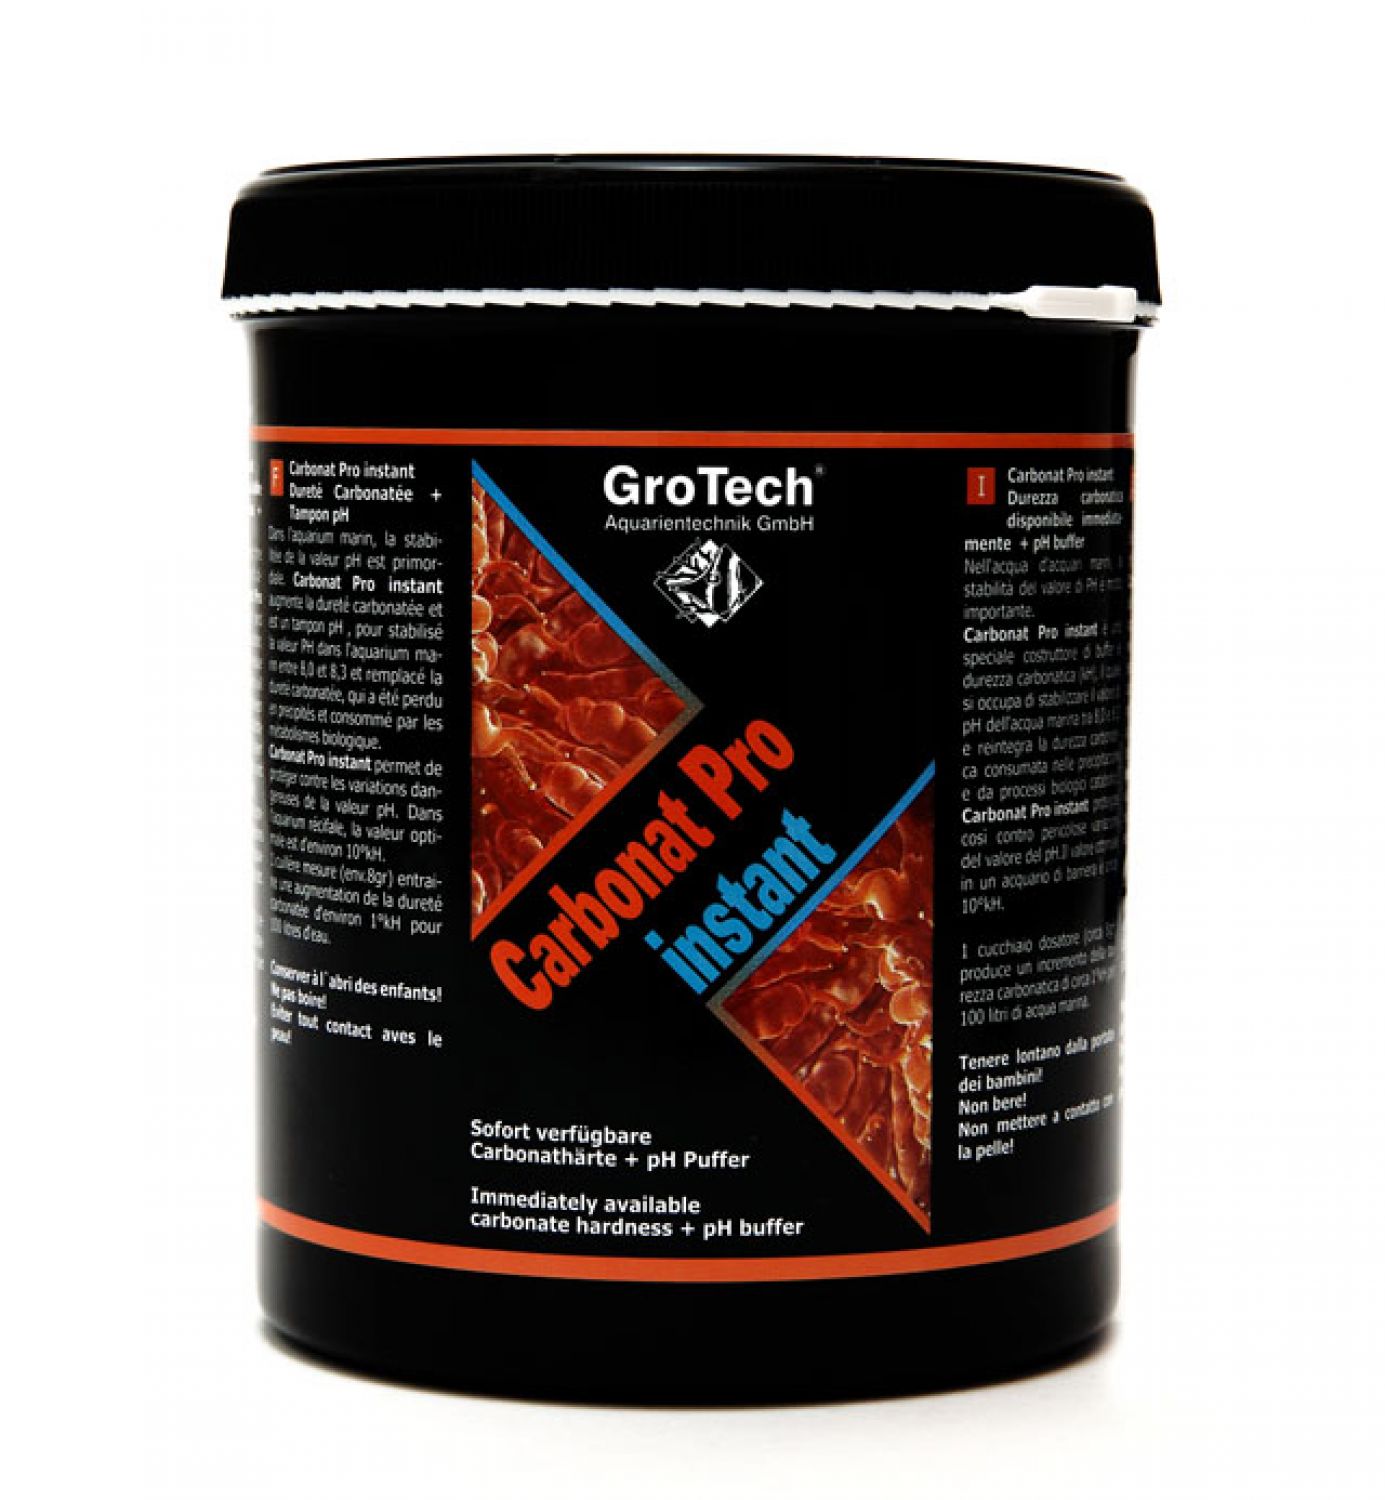 GroTech Carbonat pro instant 1000 g-Dose